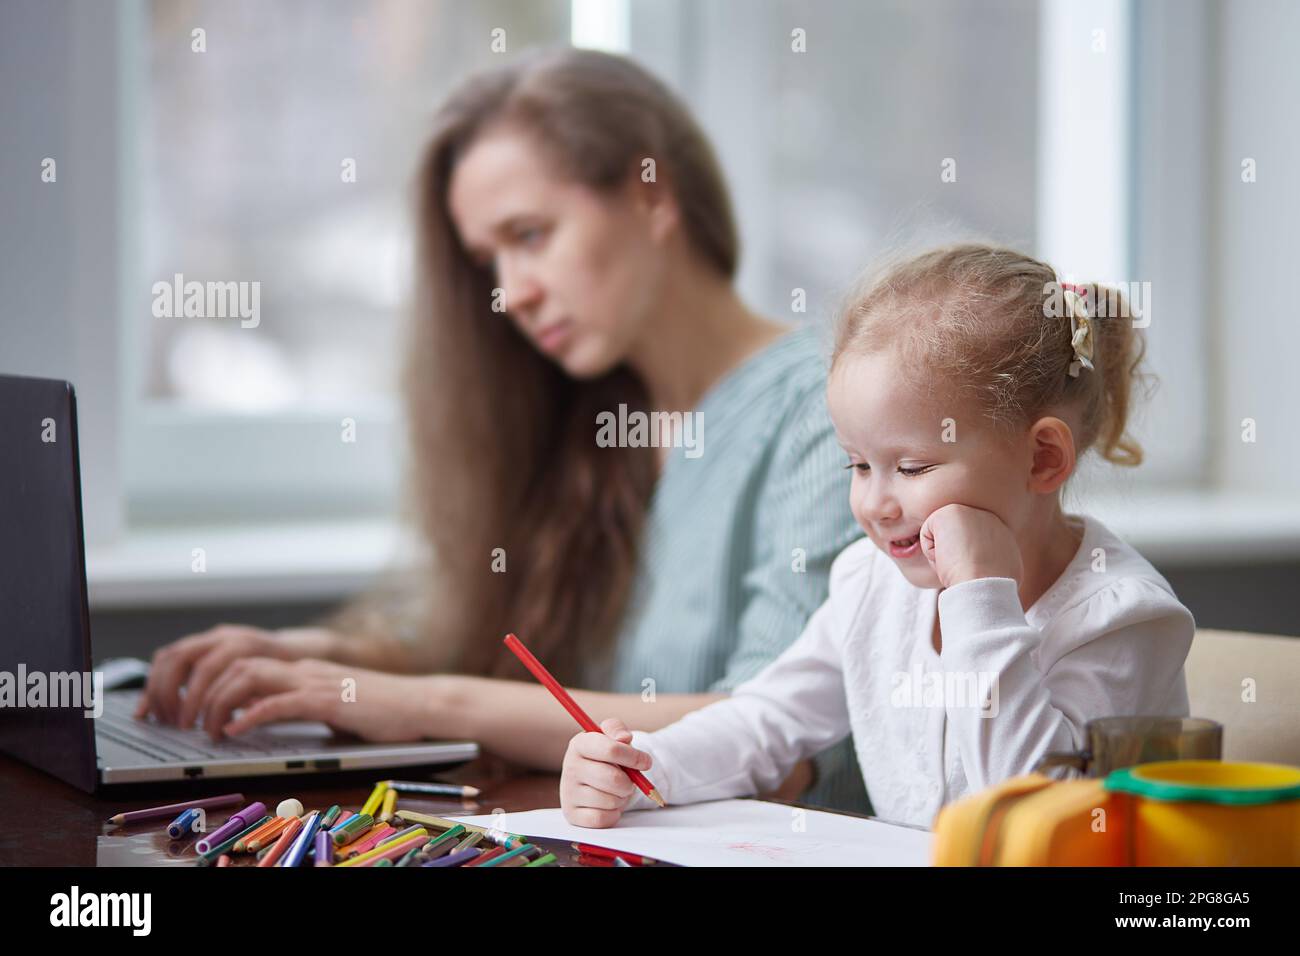 Eine freiberufliche Frau, die zu Hause mit einem Kind arbeitet. Konzentrier dich auf das Kind. Das Mädchen malt mit Bleistiften, die Mutter arbeitet. Freiberuflich, Muttertagskonzept. Stockfoto